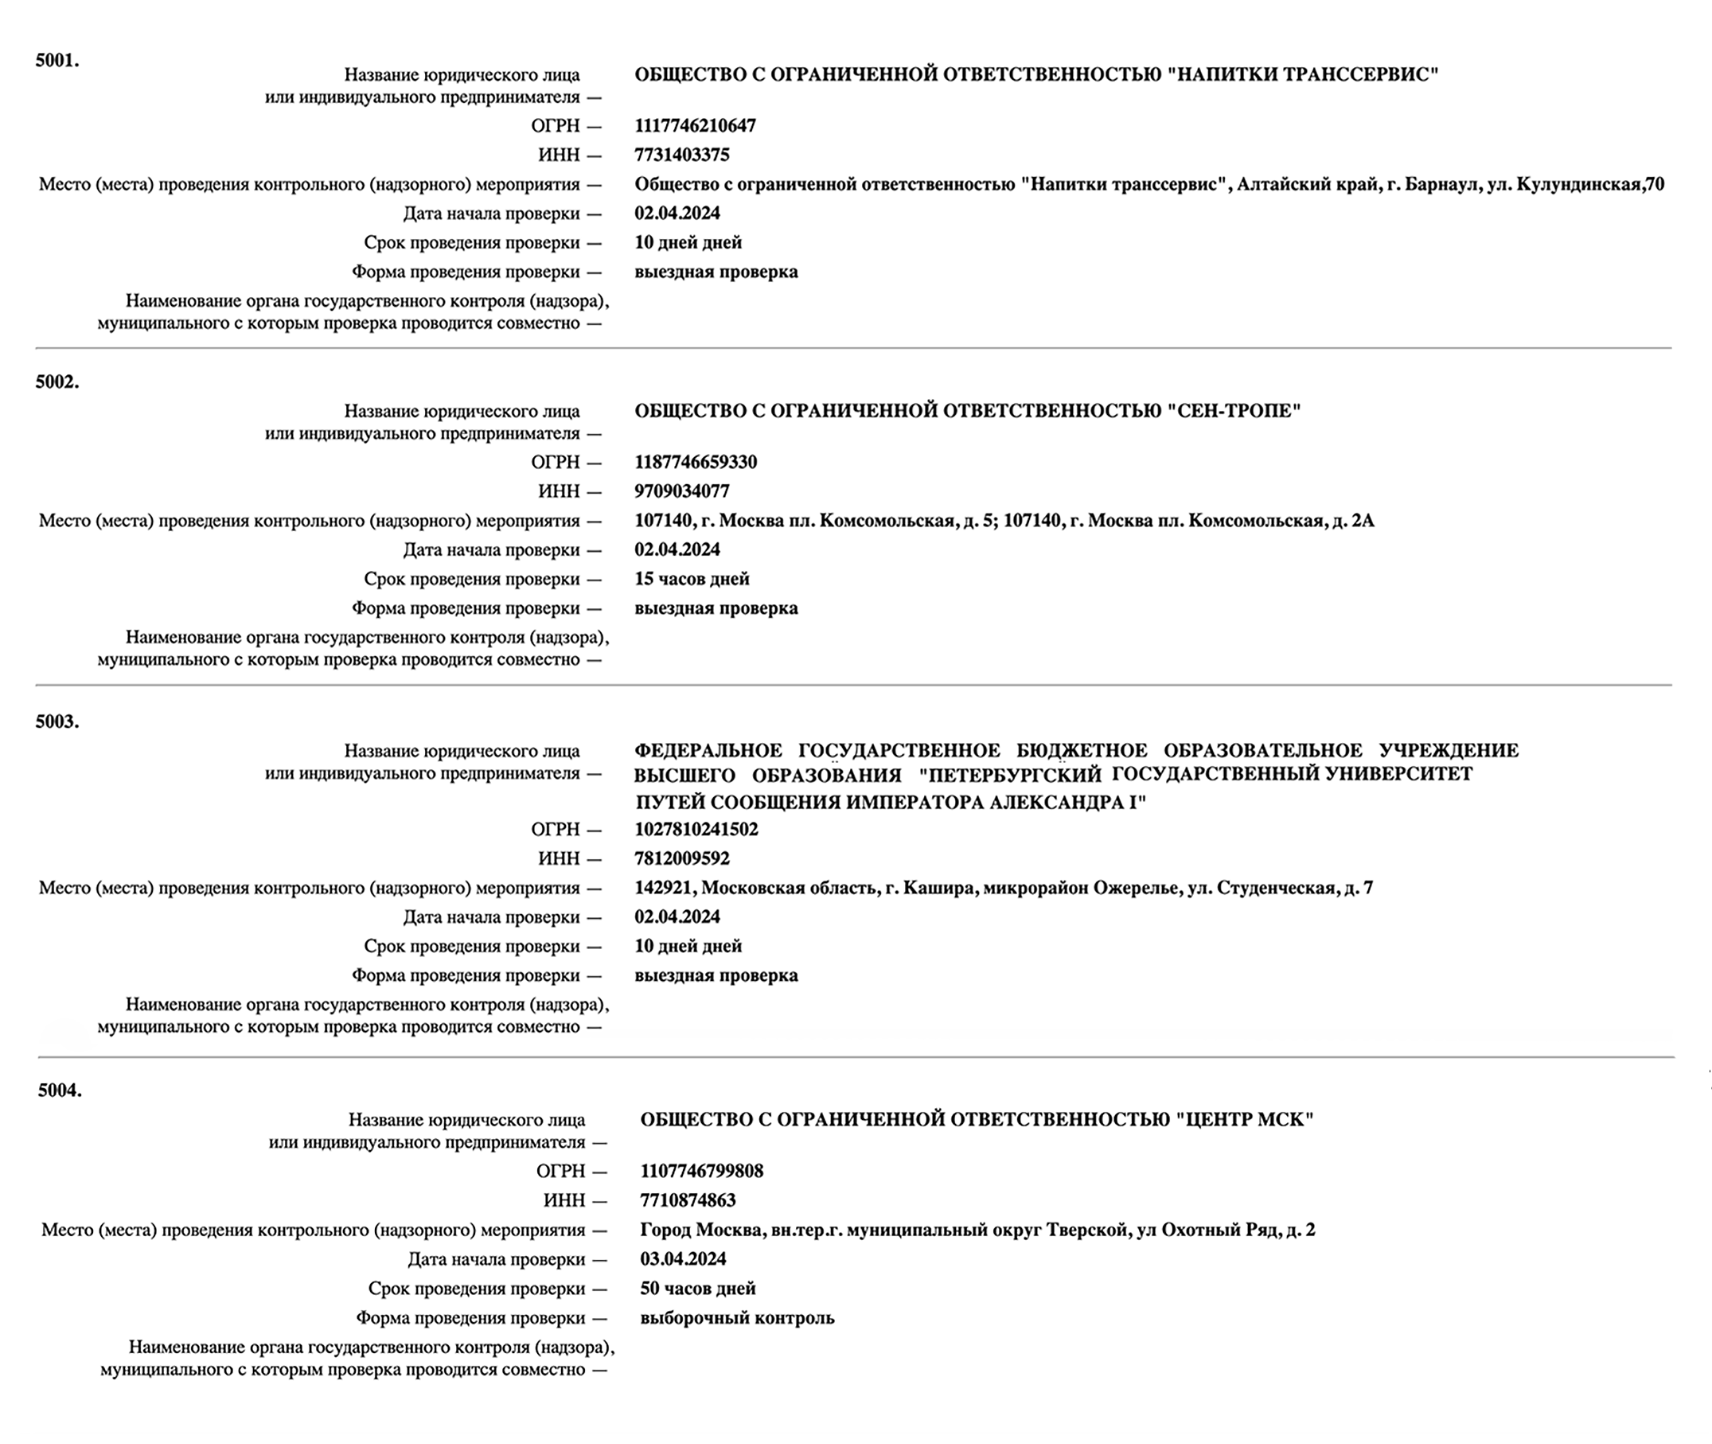 Так выглядит перечень проверок на сайте Роспотребнадзора. По каждой проверке указана дата ее начала, срок и место проведения. Источник: inspect.rospotrebnadzor.ru